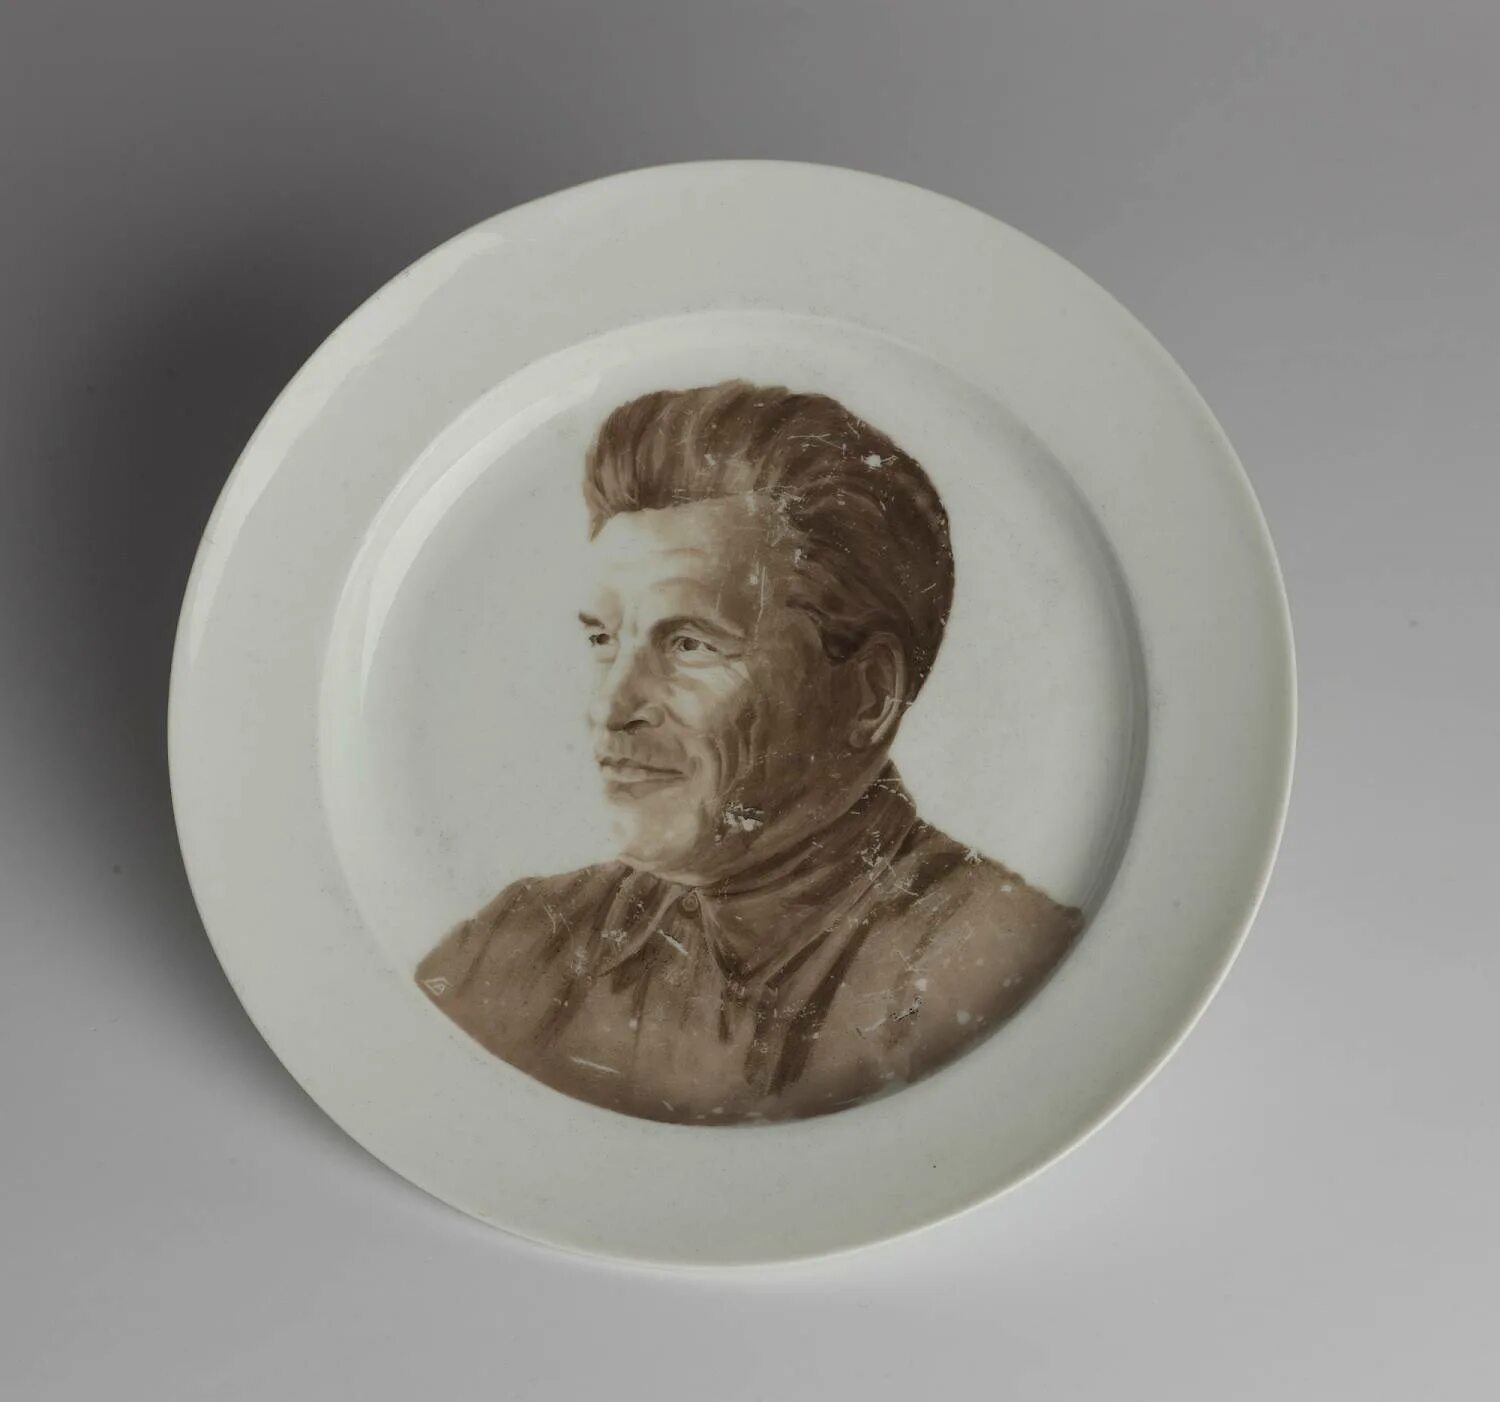 Портрет тарелка. Портрет на тарелке. Тарелка с портретом Сталина. Тарелки с портретами артистов. Тарелки с портретами нацистов.